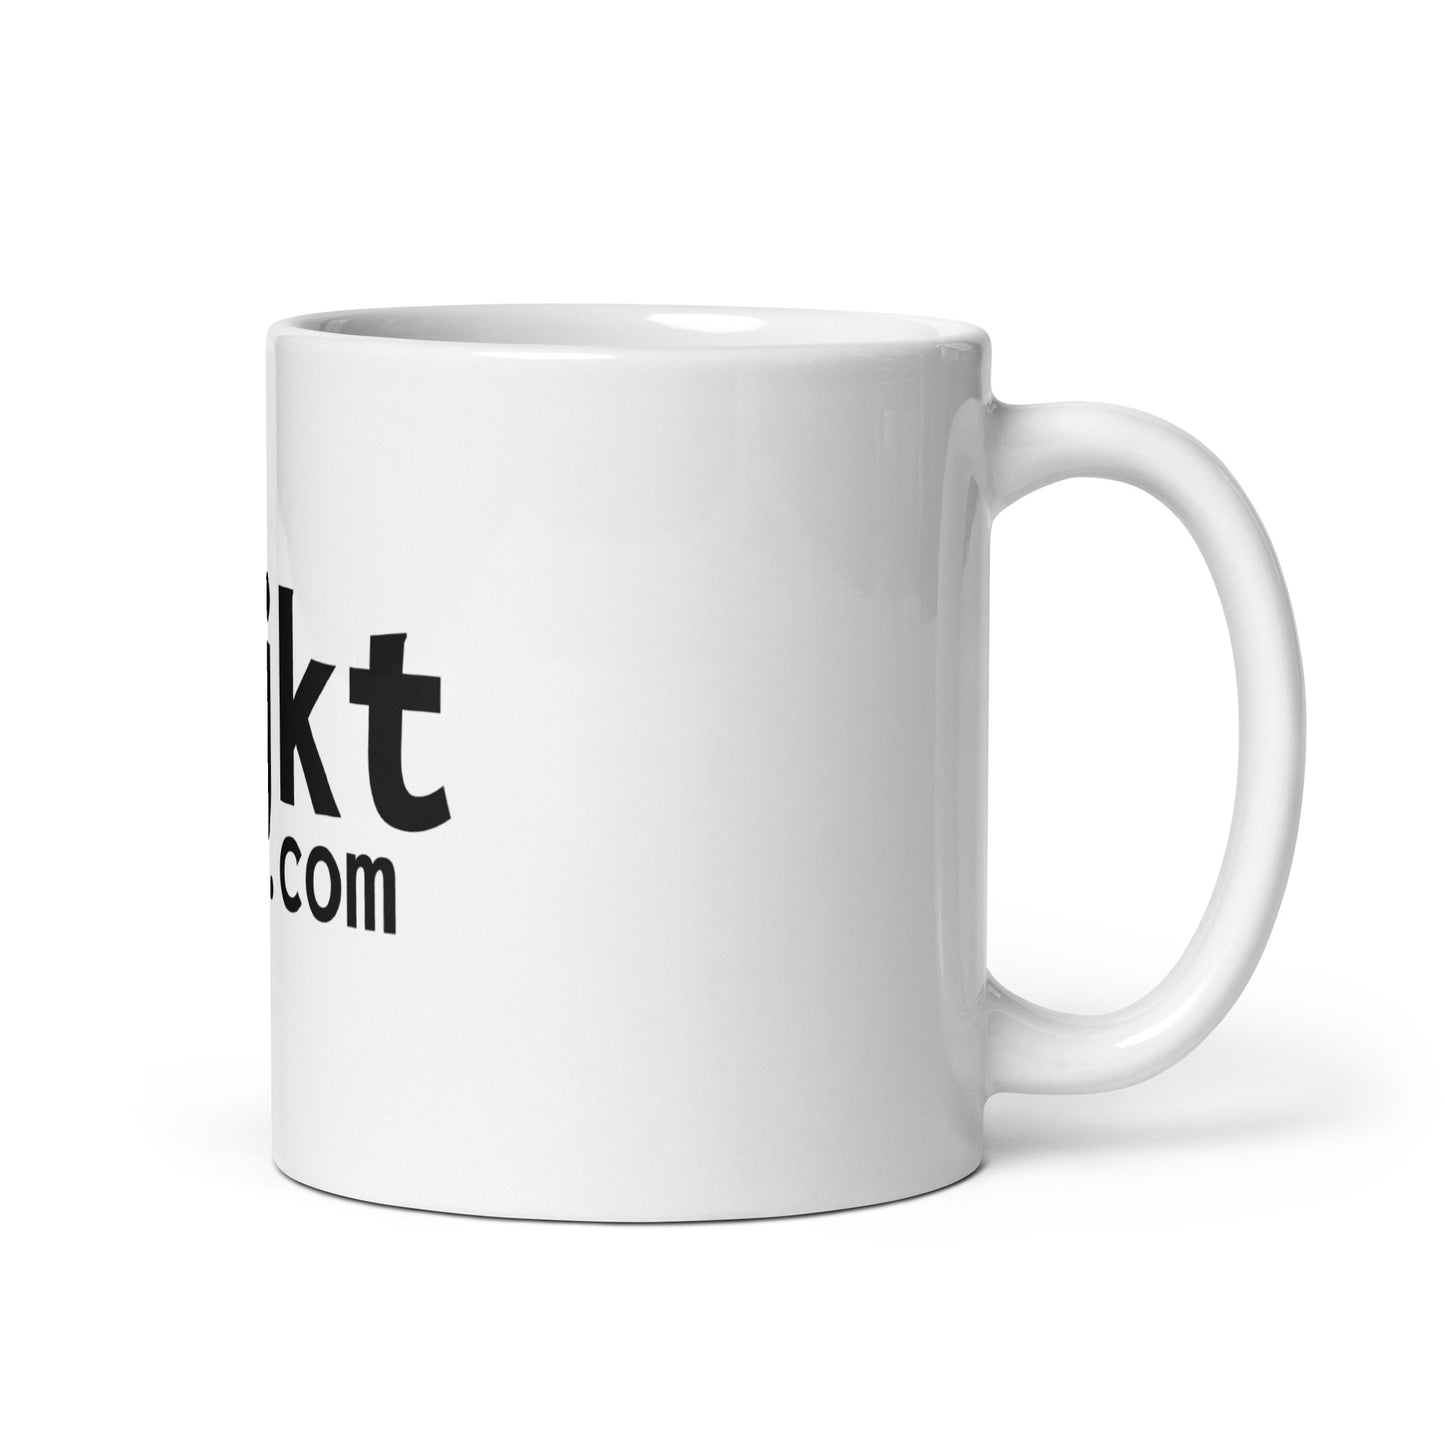 objkt.com original white mug